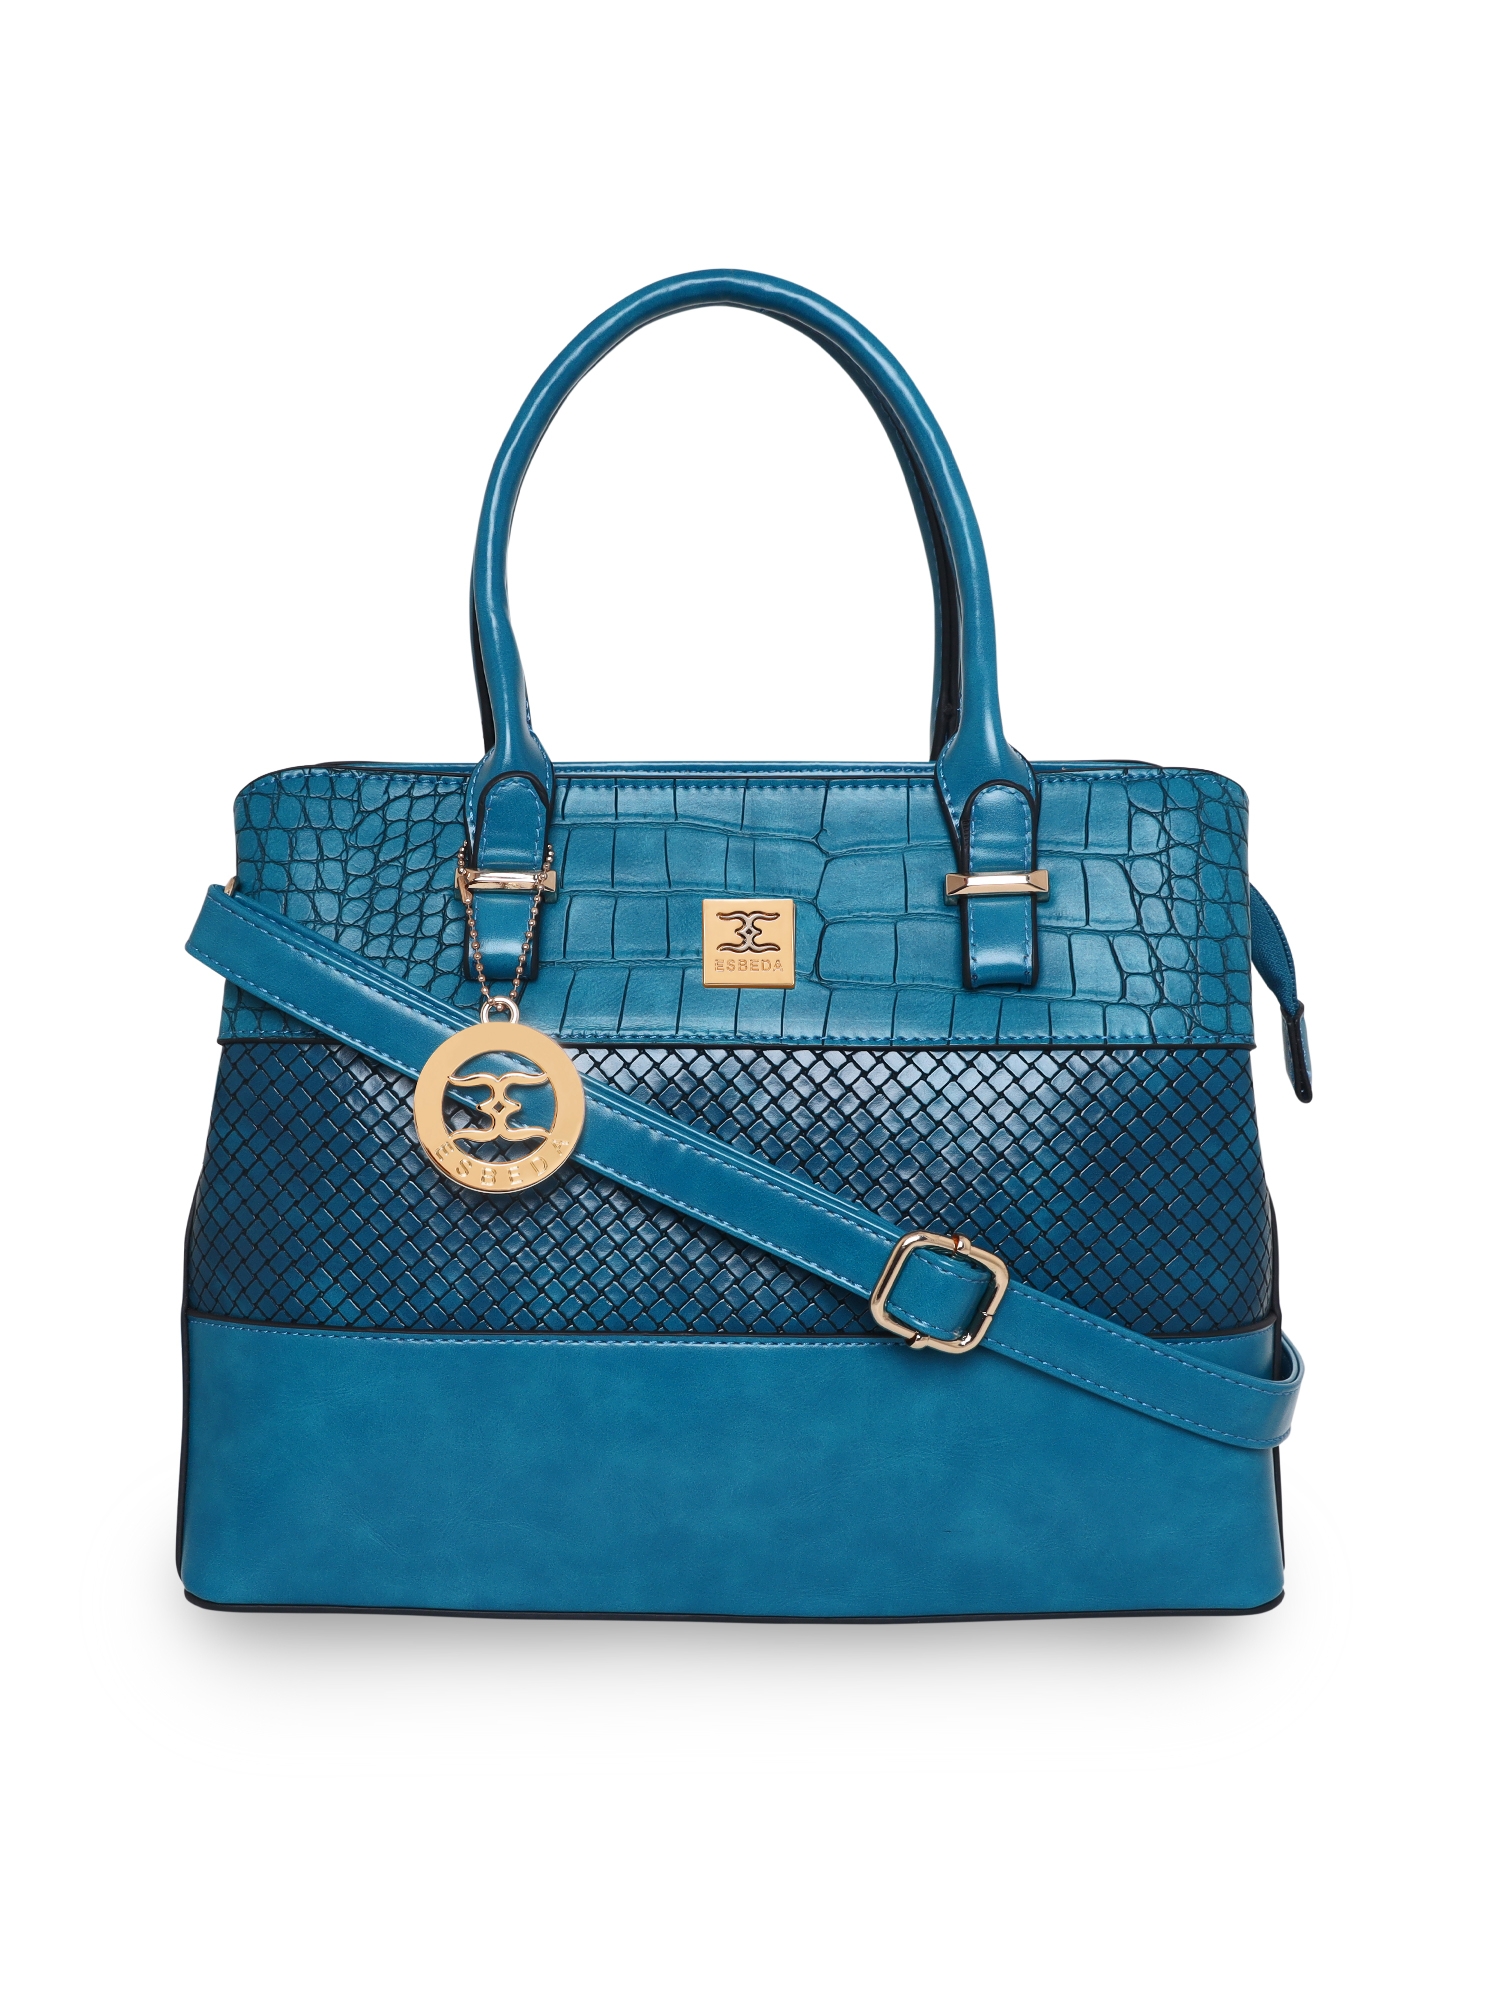 ESBEDA | ESBEDA Sea Green Color Solid Pattern Top Handle handbag For Women